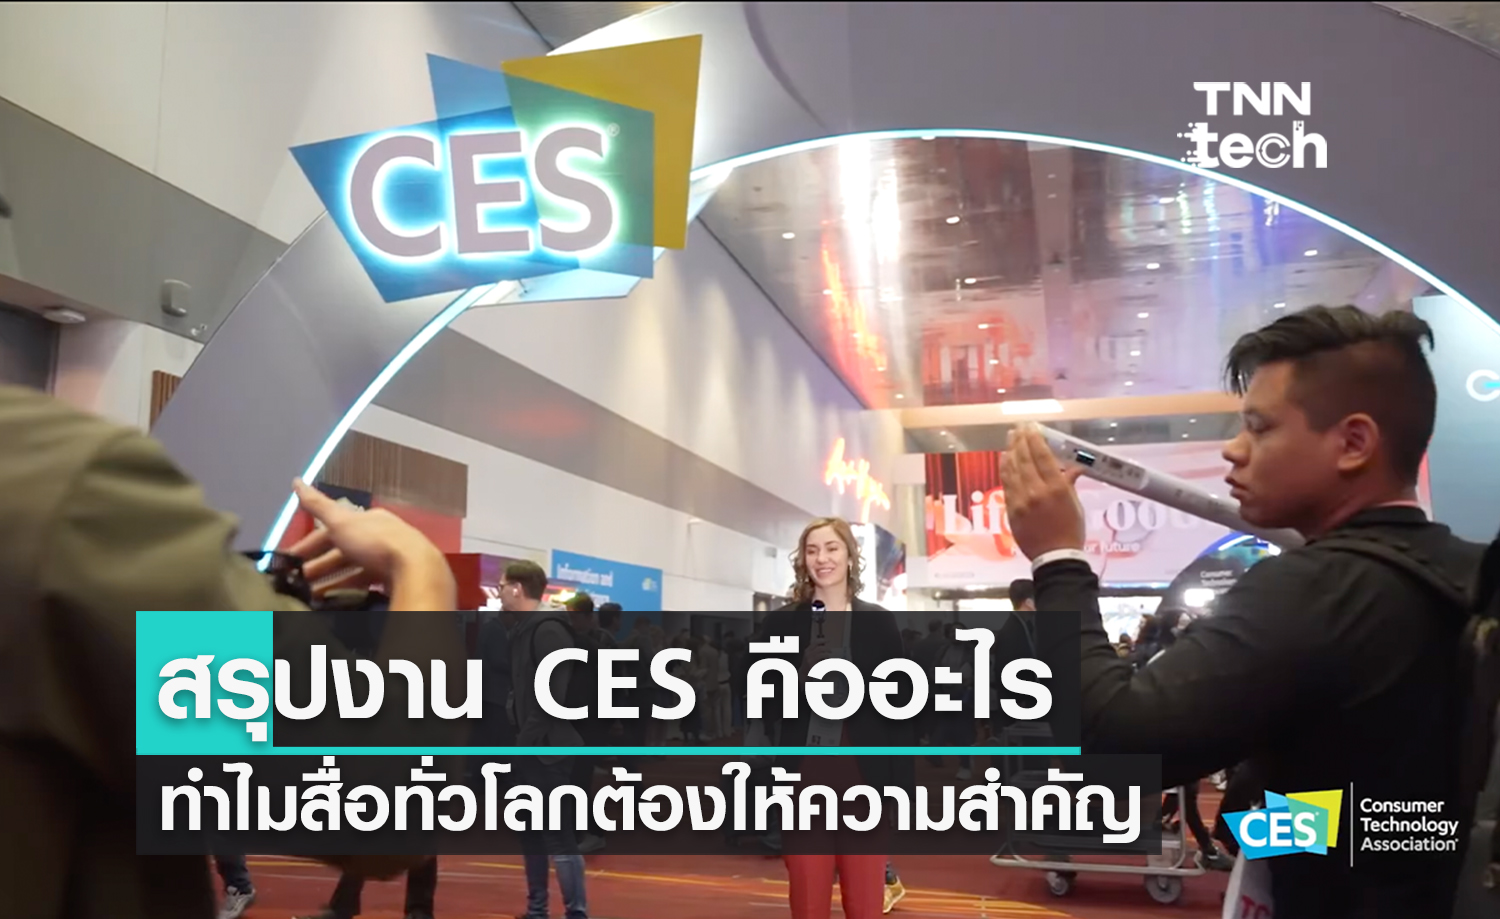 สรุปงาน CES คืออะไร ทำไมสื่อเทคโนโลยีในไทยและทั่วโลกถึงต้องให้ความสำคัญ ?